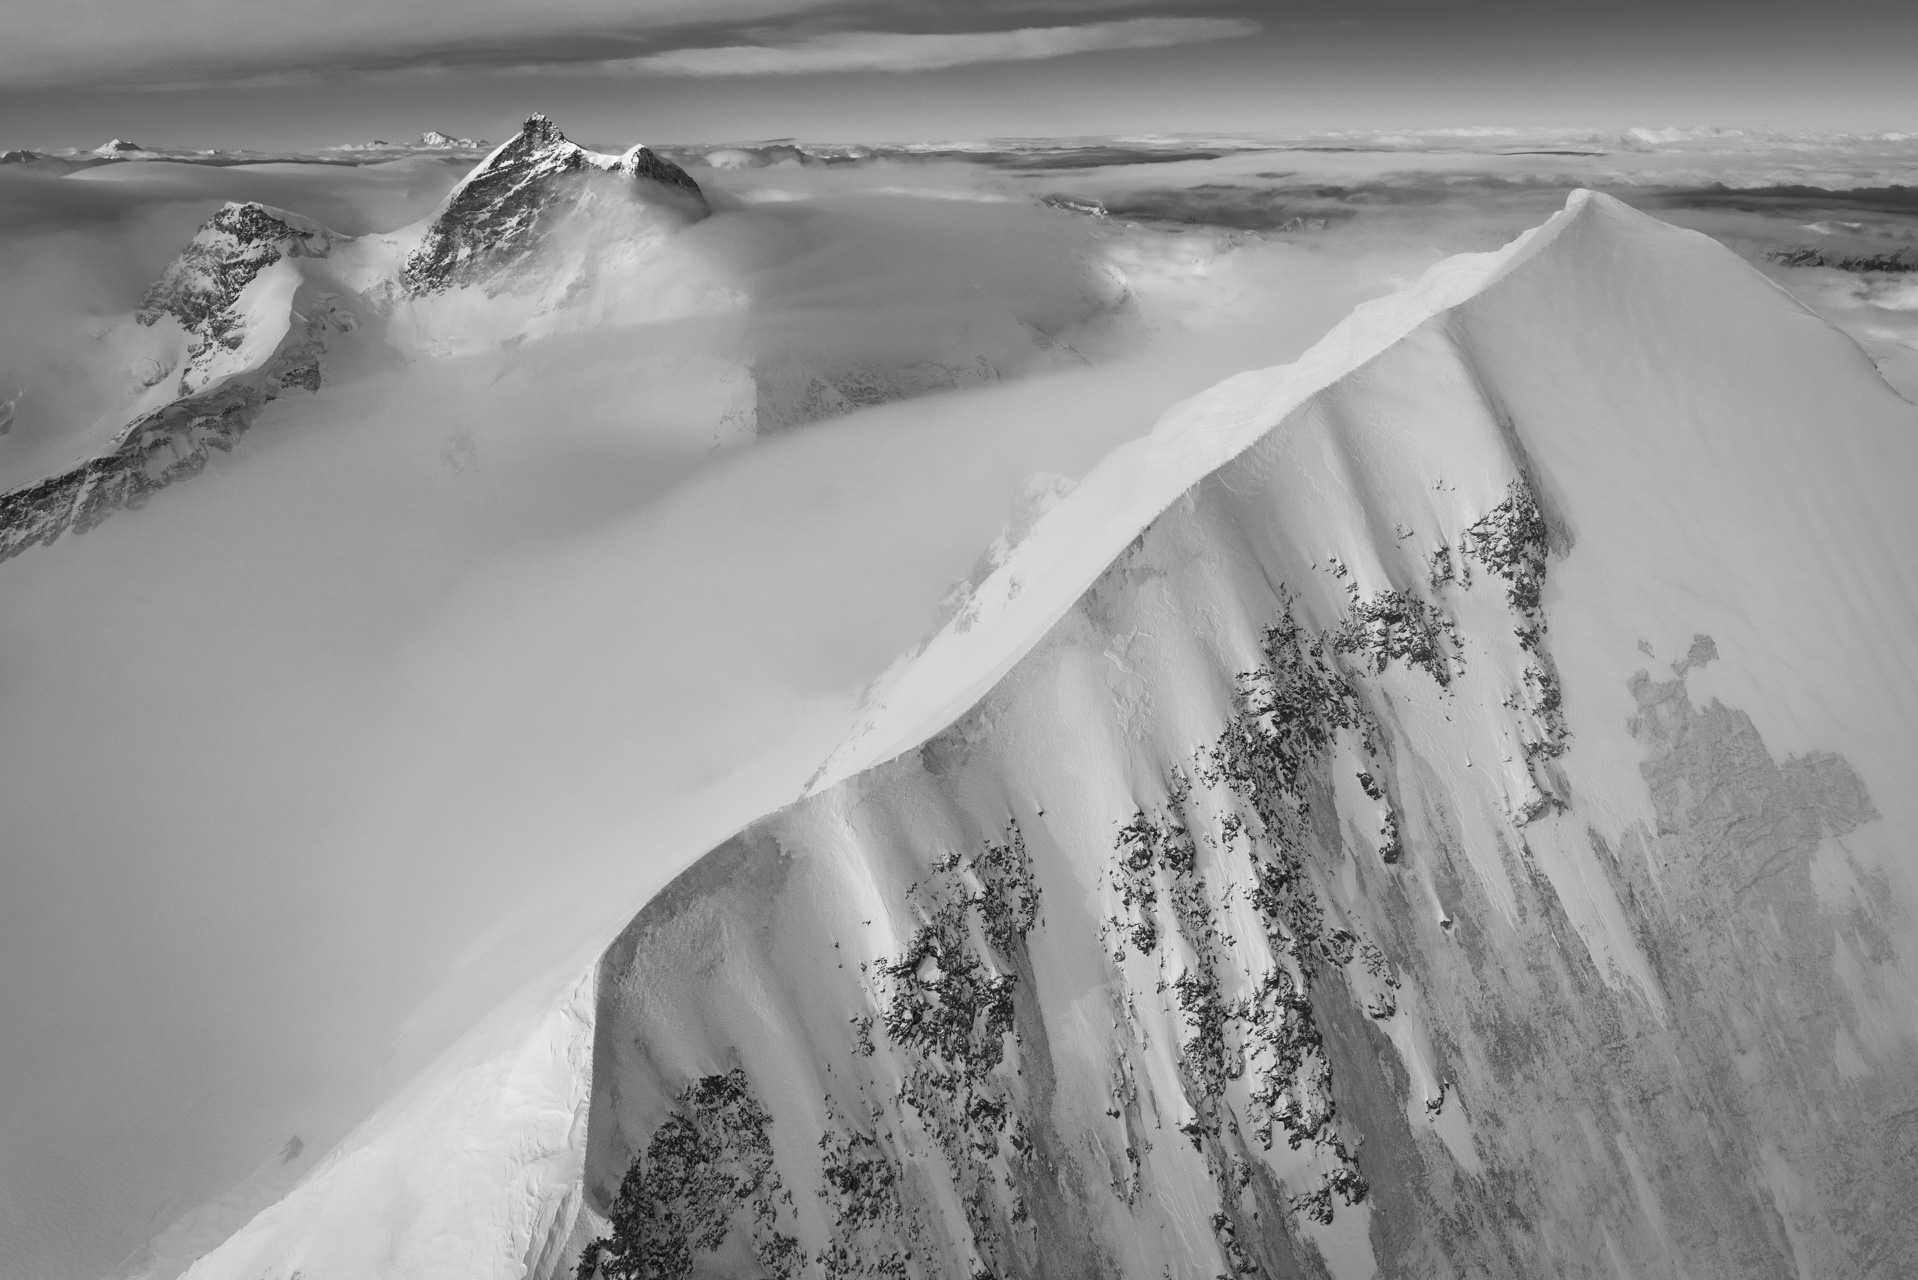 Monch Jungfrau - Schwarz-Weiß-Foto des Mont Blanc und grand Combin in den Schweizer Alpen